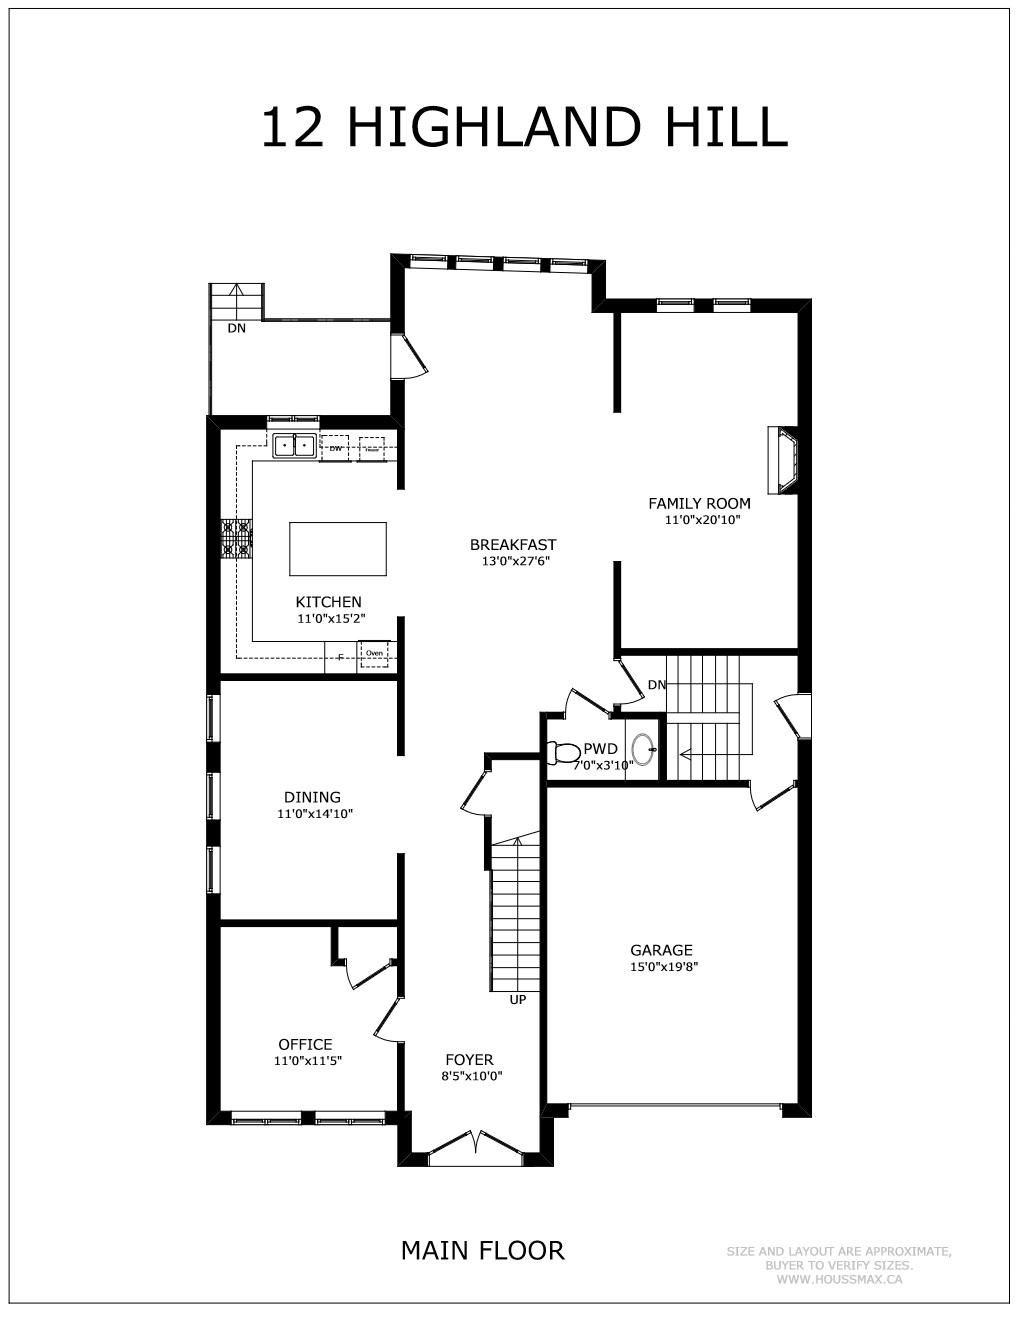 2 Highland Hill Floor Plan - Main Floor